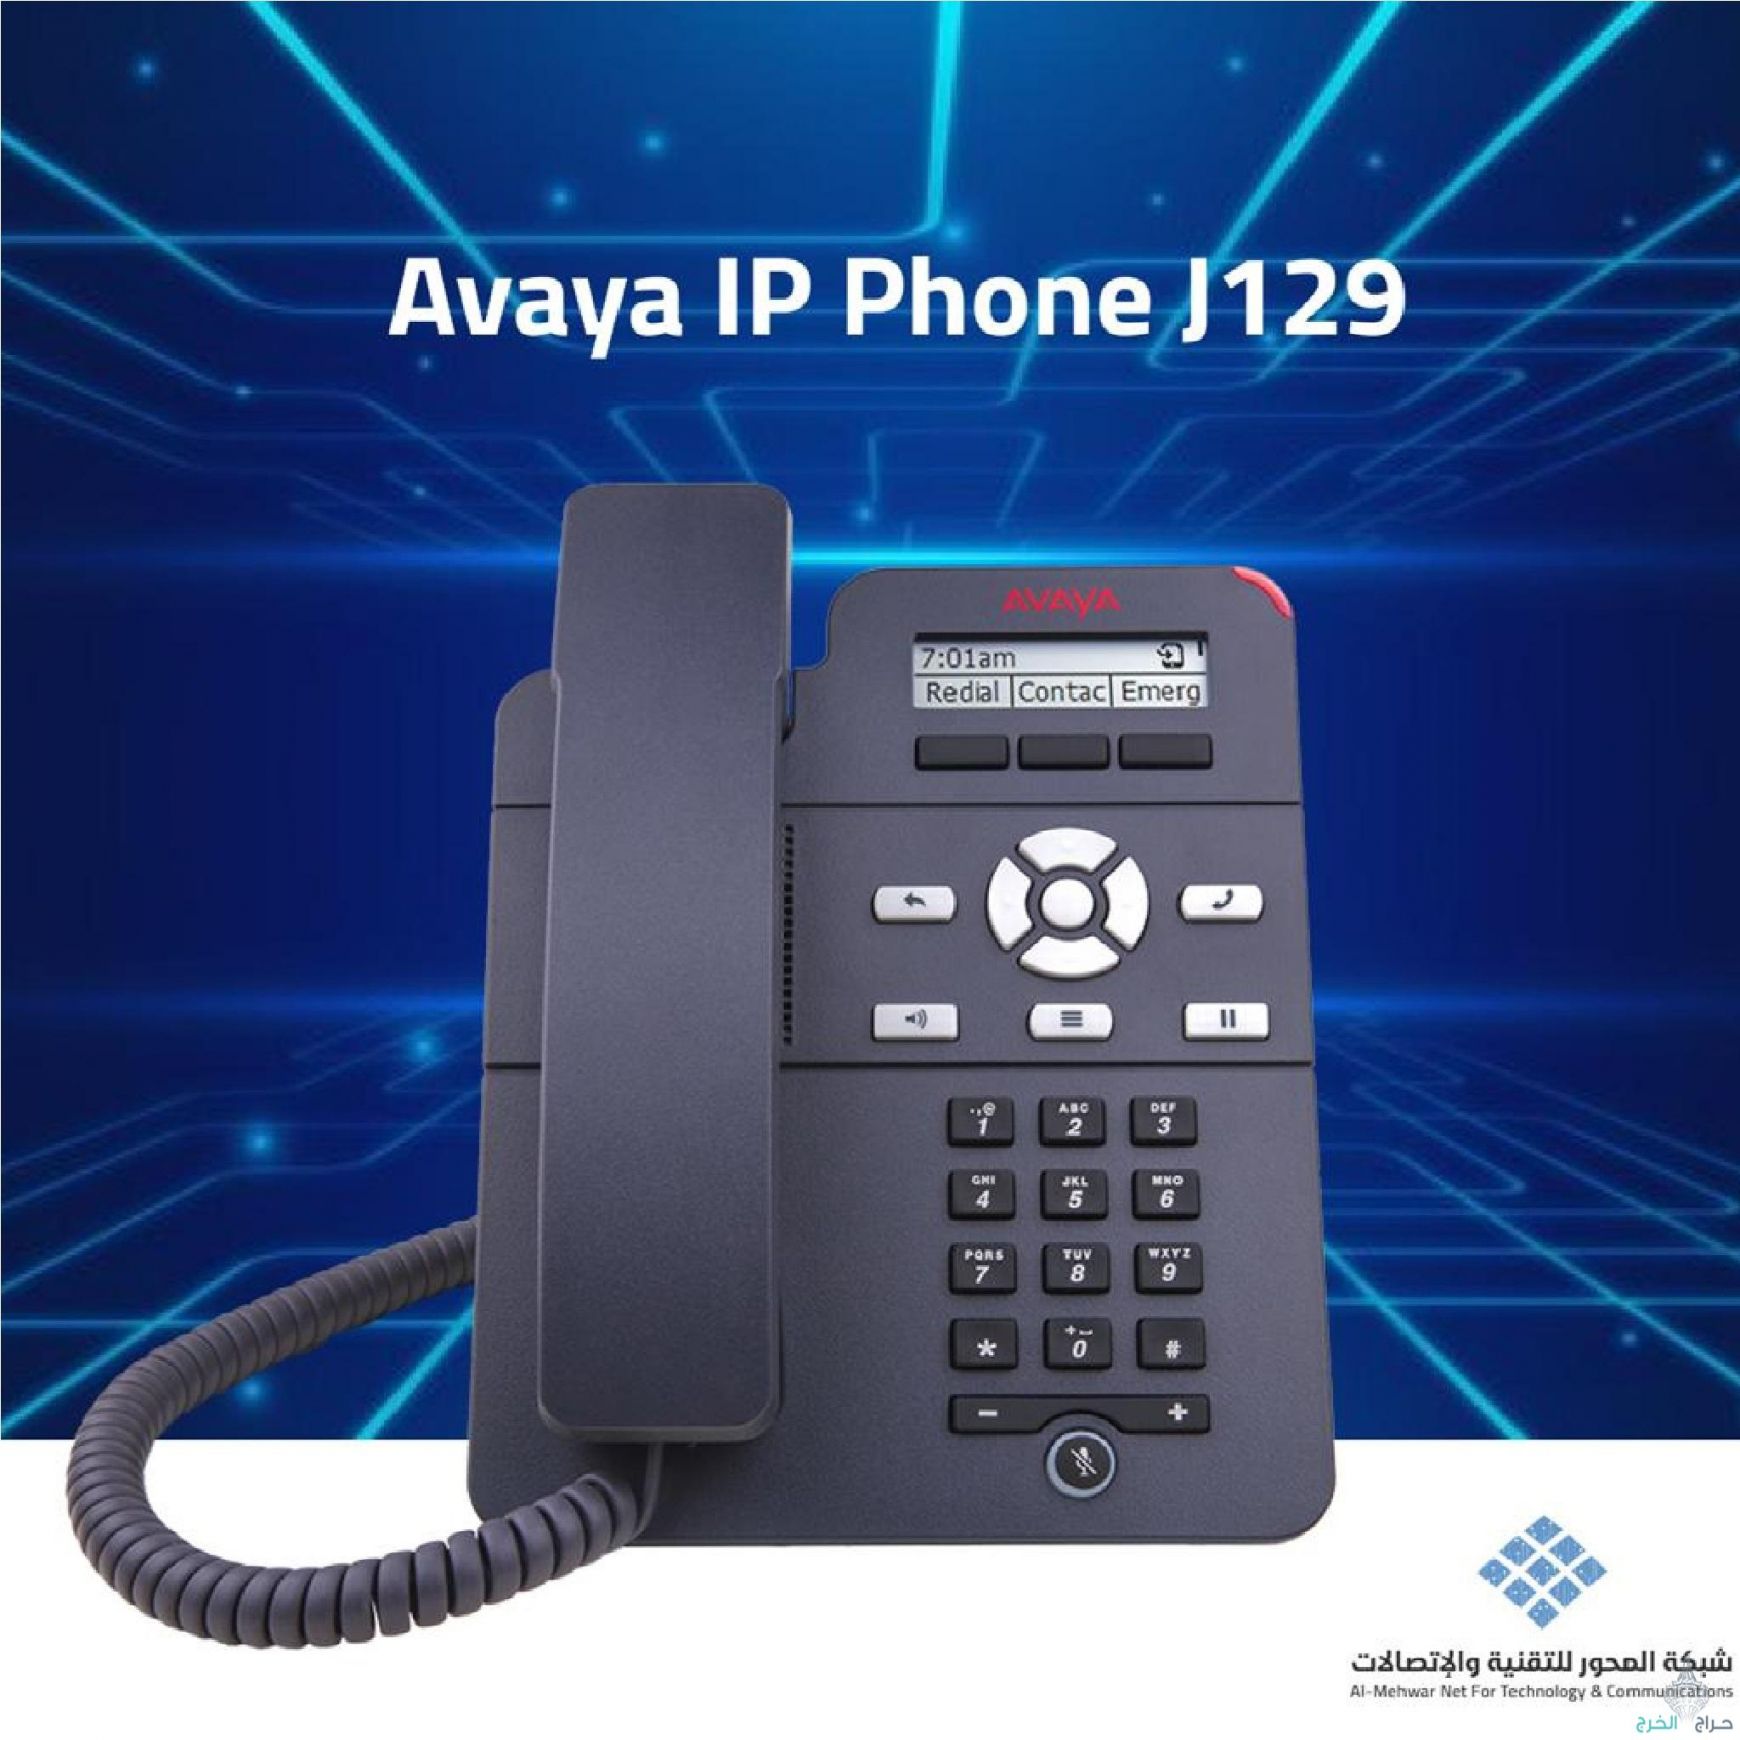 AVAYA IP PHONE J129